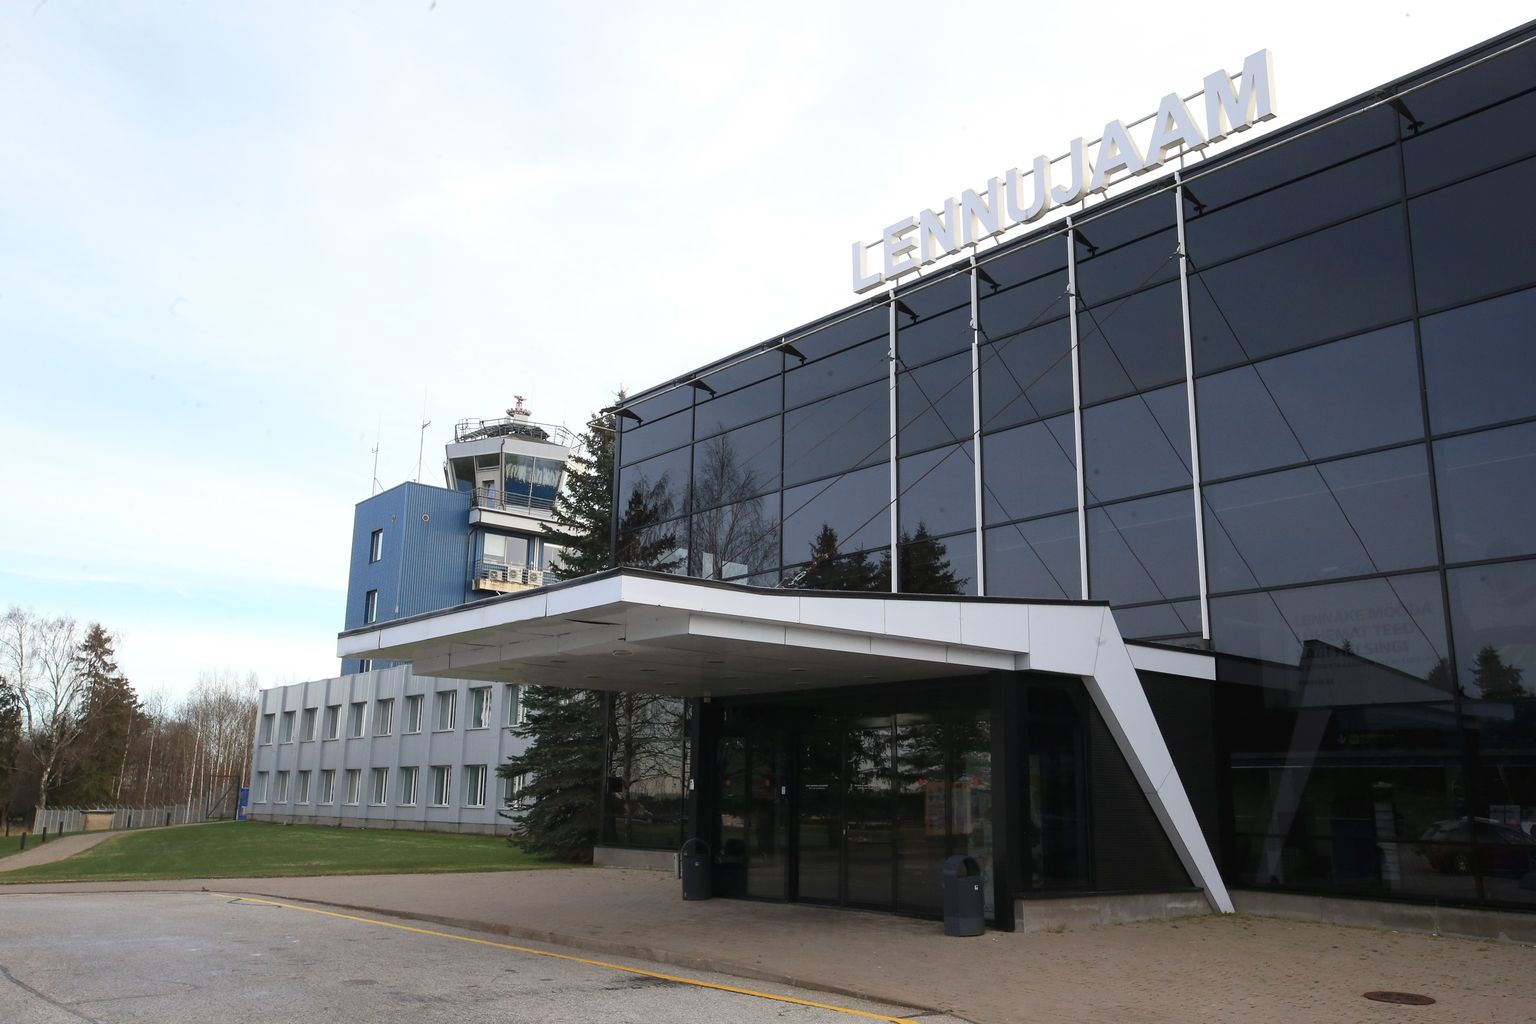 Tulevikus võib Tartu lennujaamast reisida otse ka Seinäjokki.